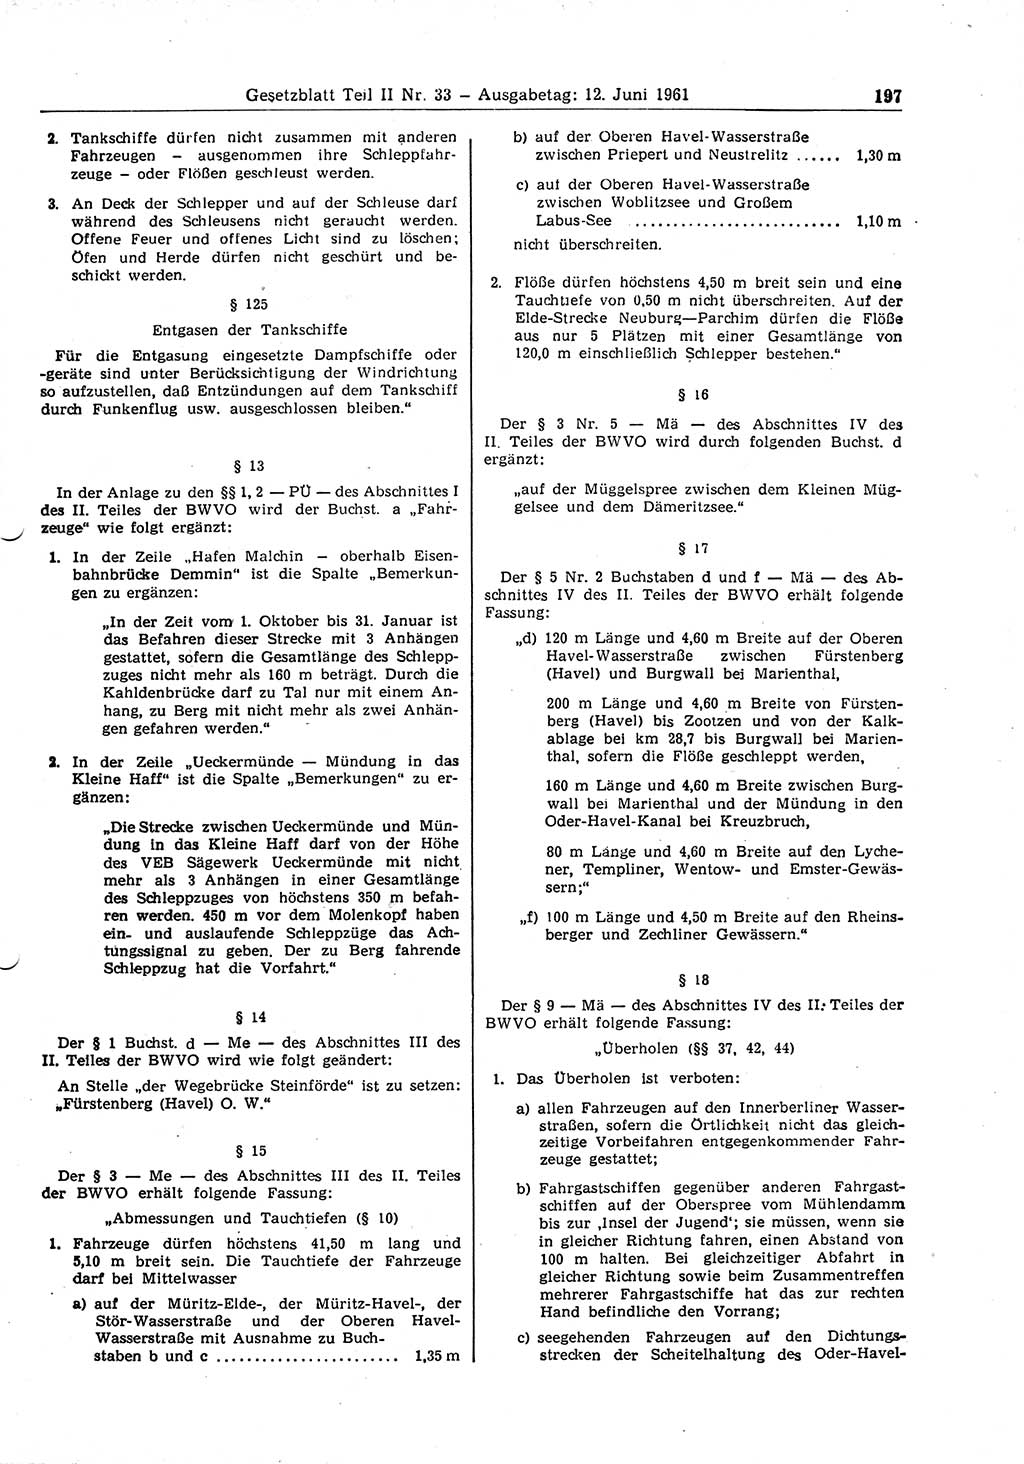 Gesetzblatt (GBl.) der Deutschen Demokratischen Republik (DDR) Teil ⅠⅠ 1961, Seite 197 (GBl. DDR ⅠⅠ 1961, S. 197)